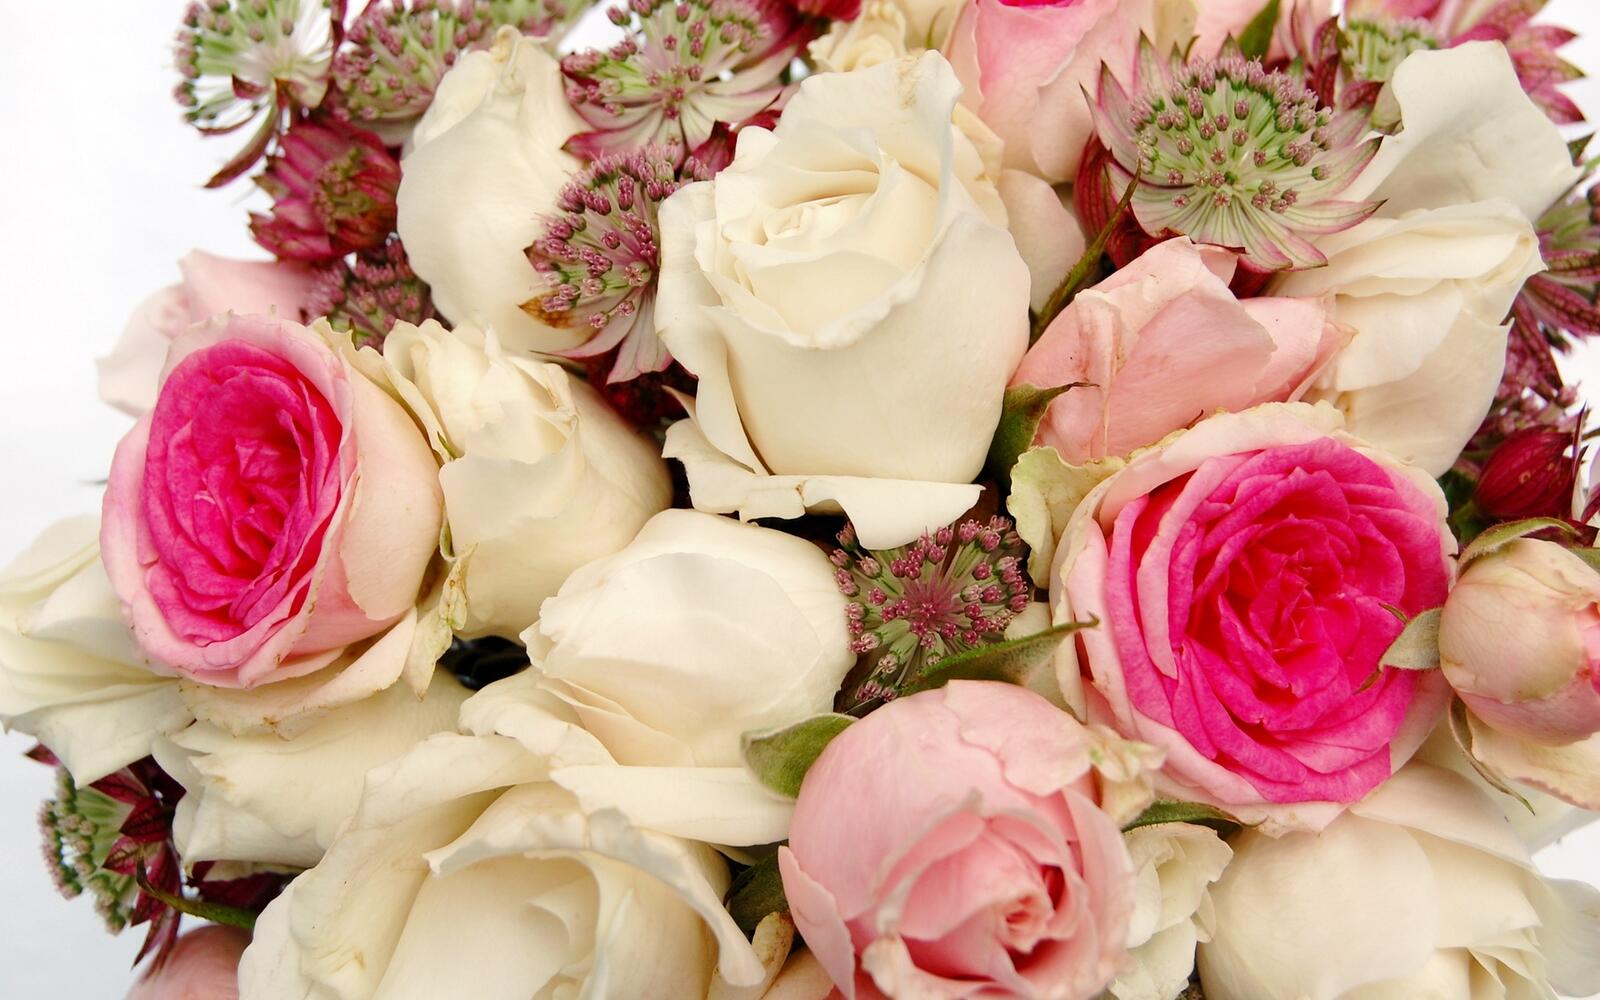 Бесплатное фото Букет белых роз